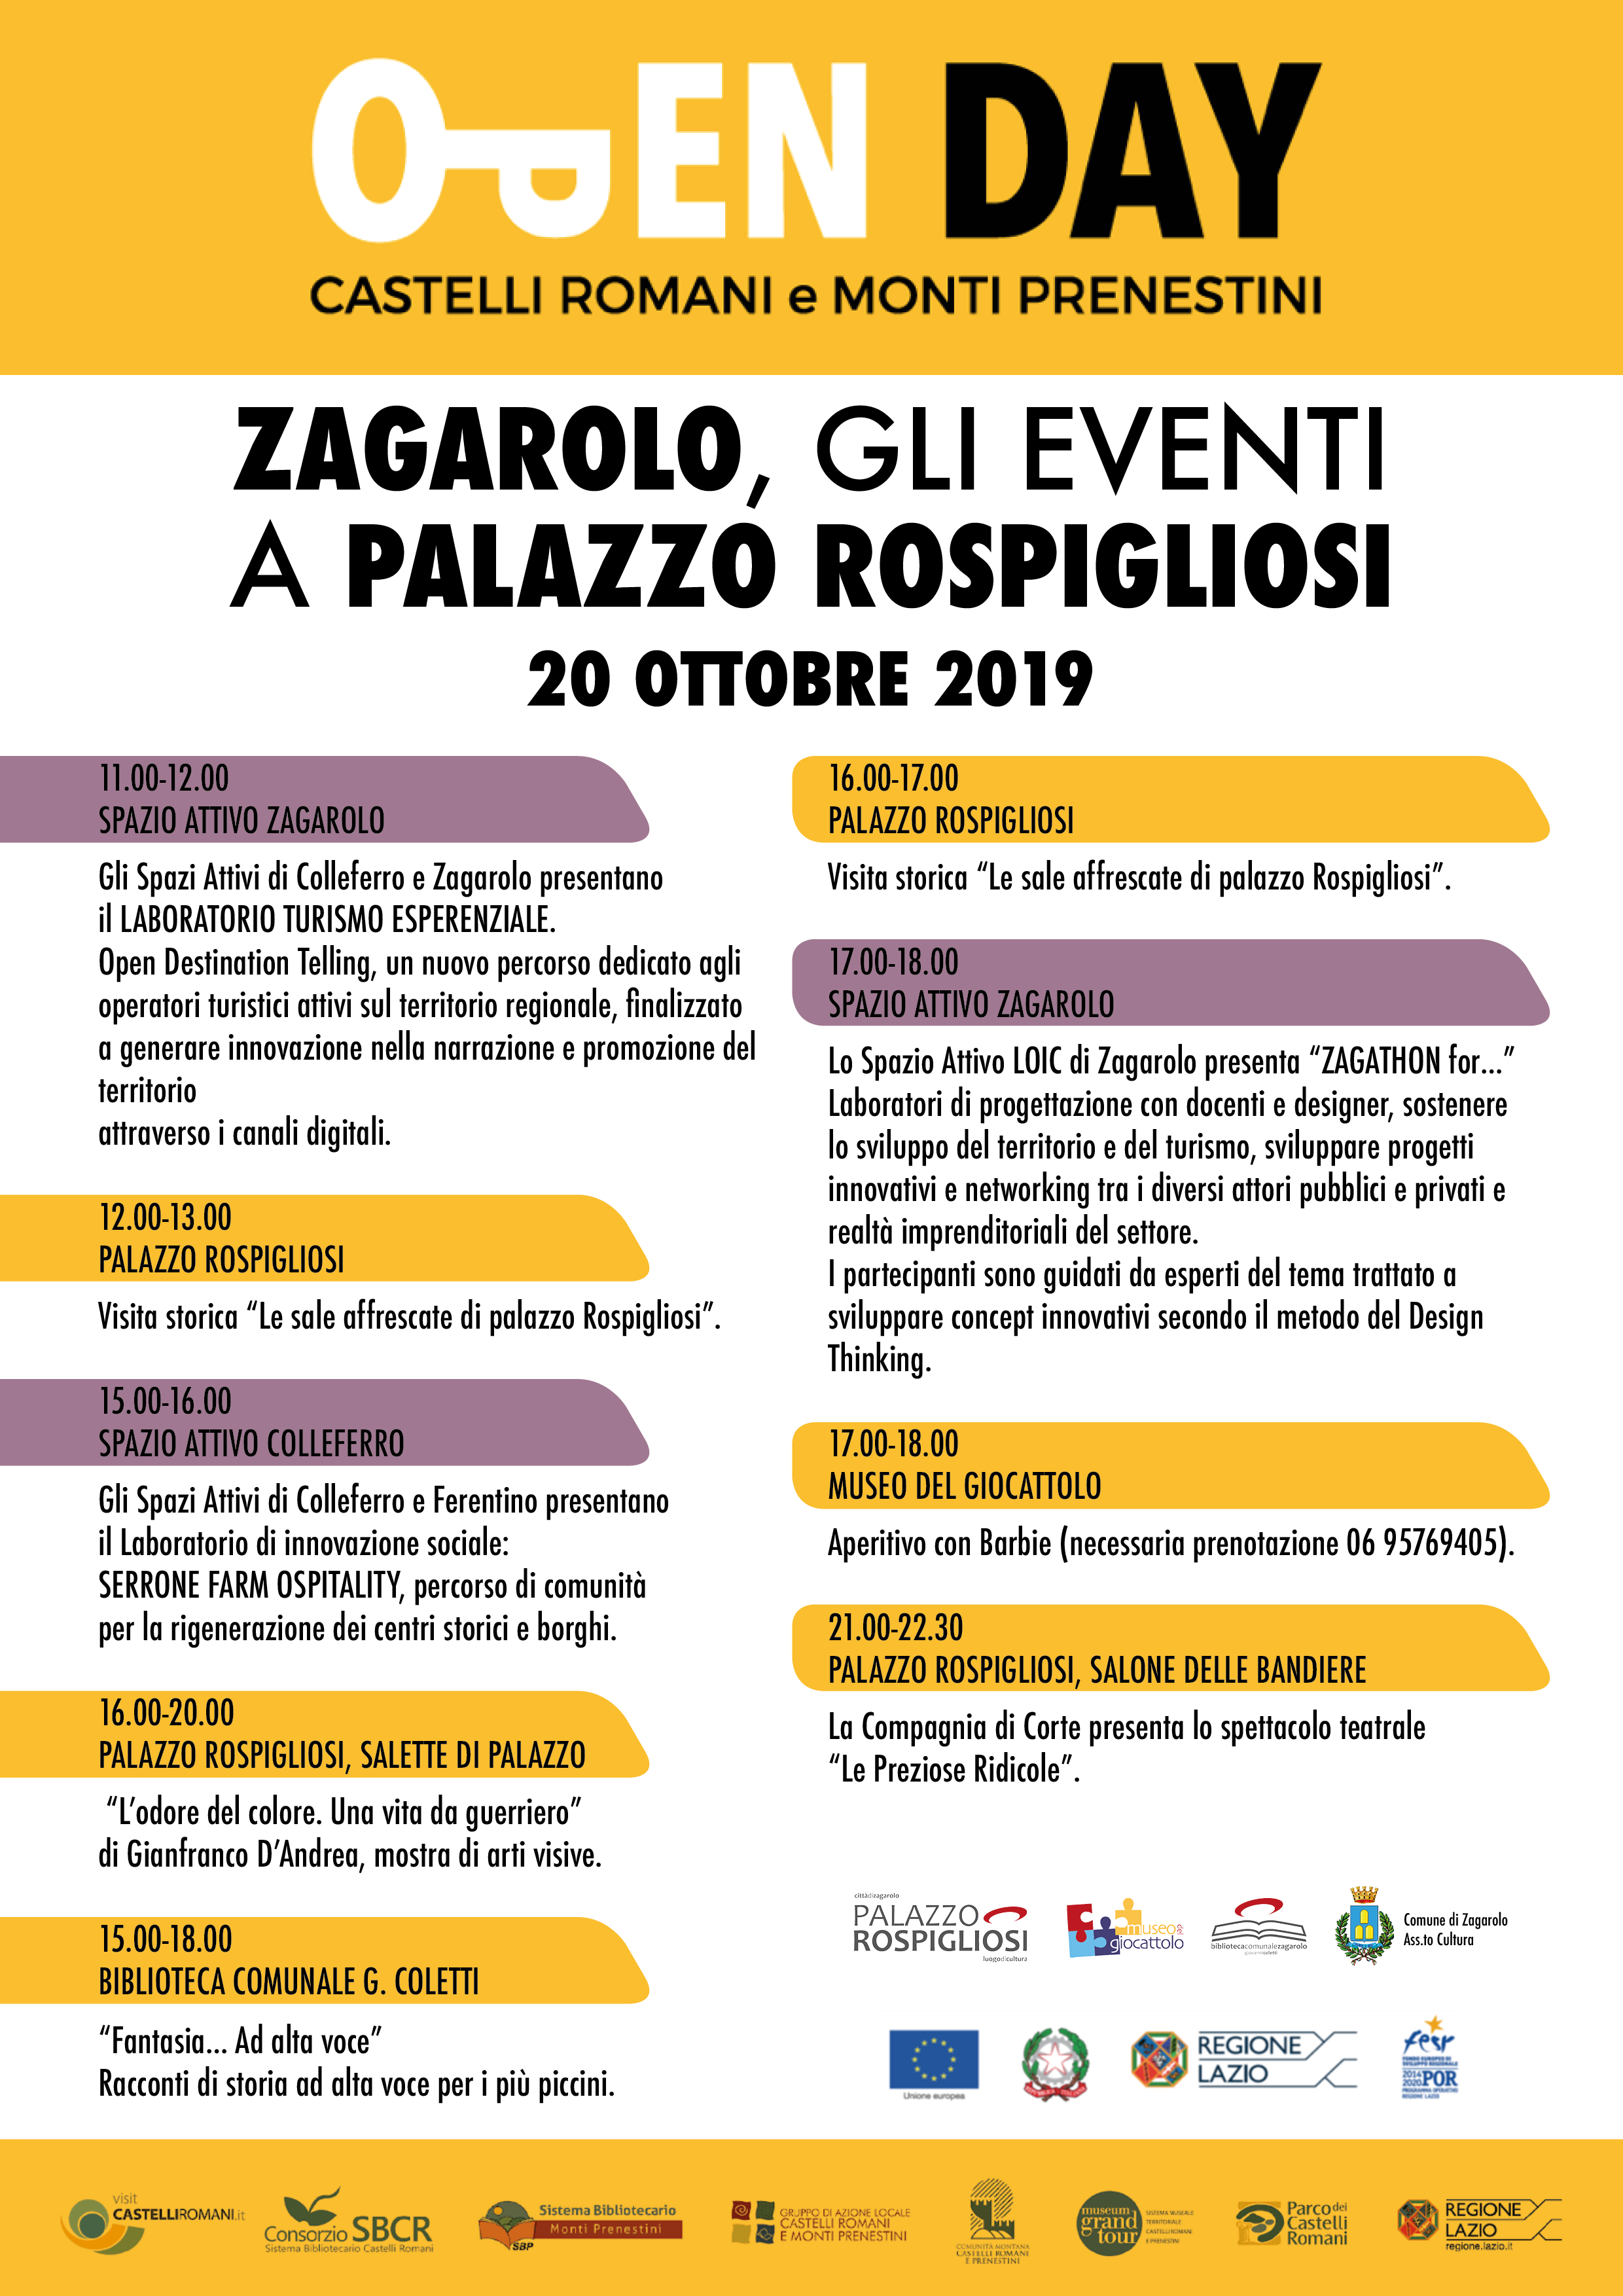 Open Day Castelli Romani e Monti Prenestini, tutti gli eventi a Palazzo Rospigliosi